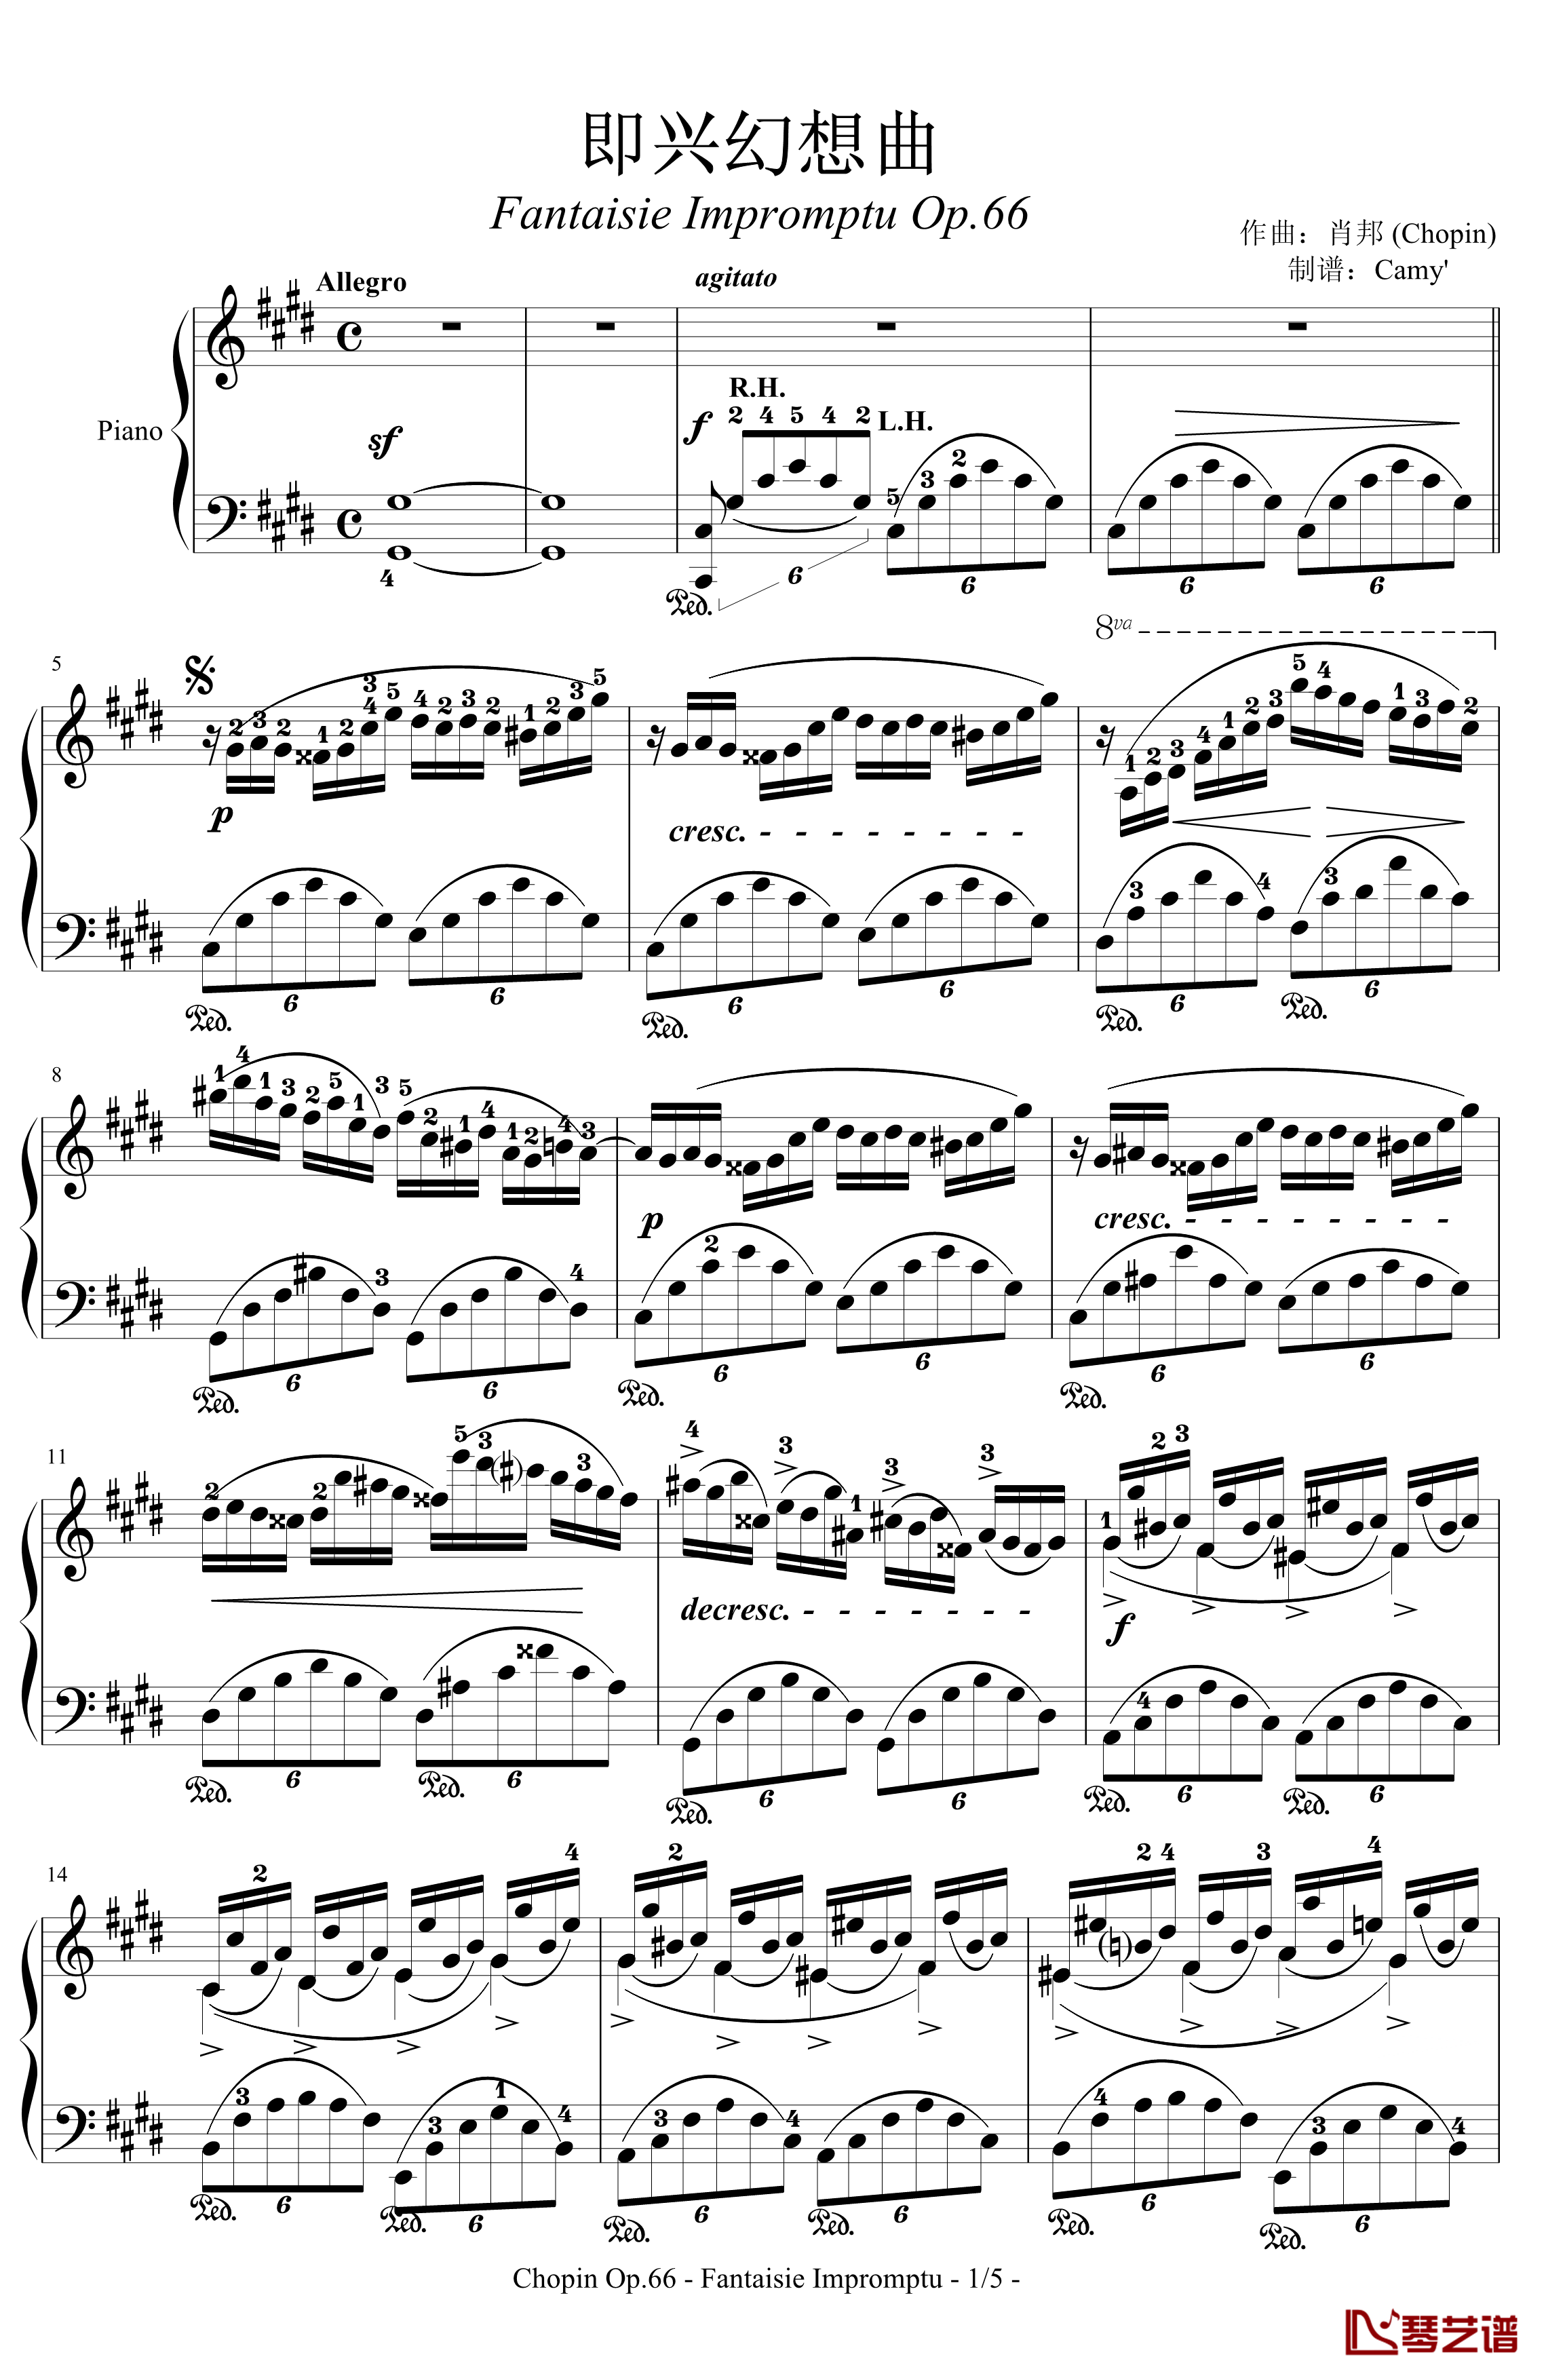 即兴幻想曲钢琴谱-带指法-Op.66-肖邦-chopin1